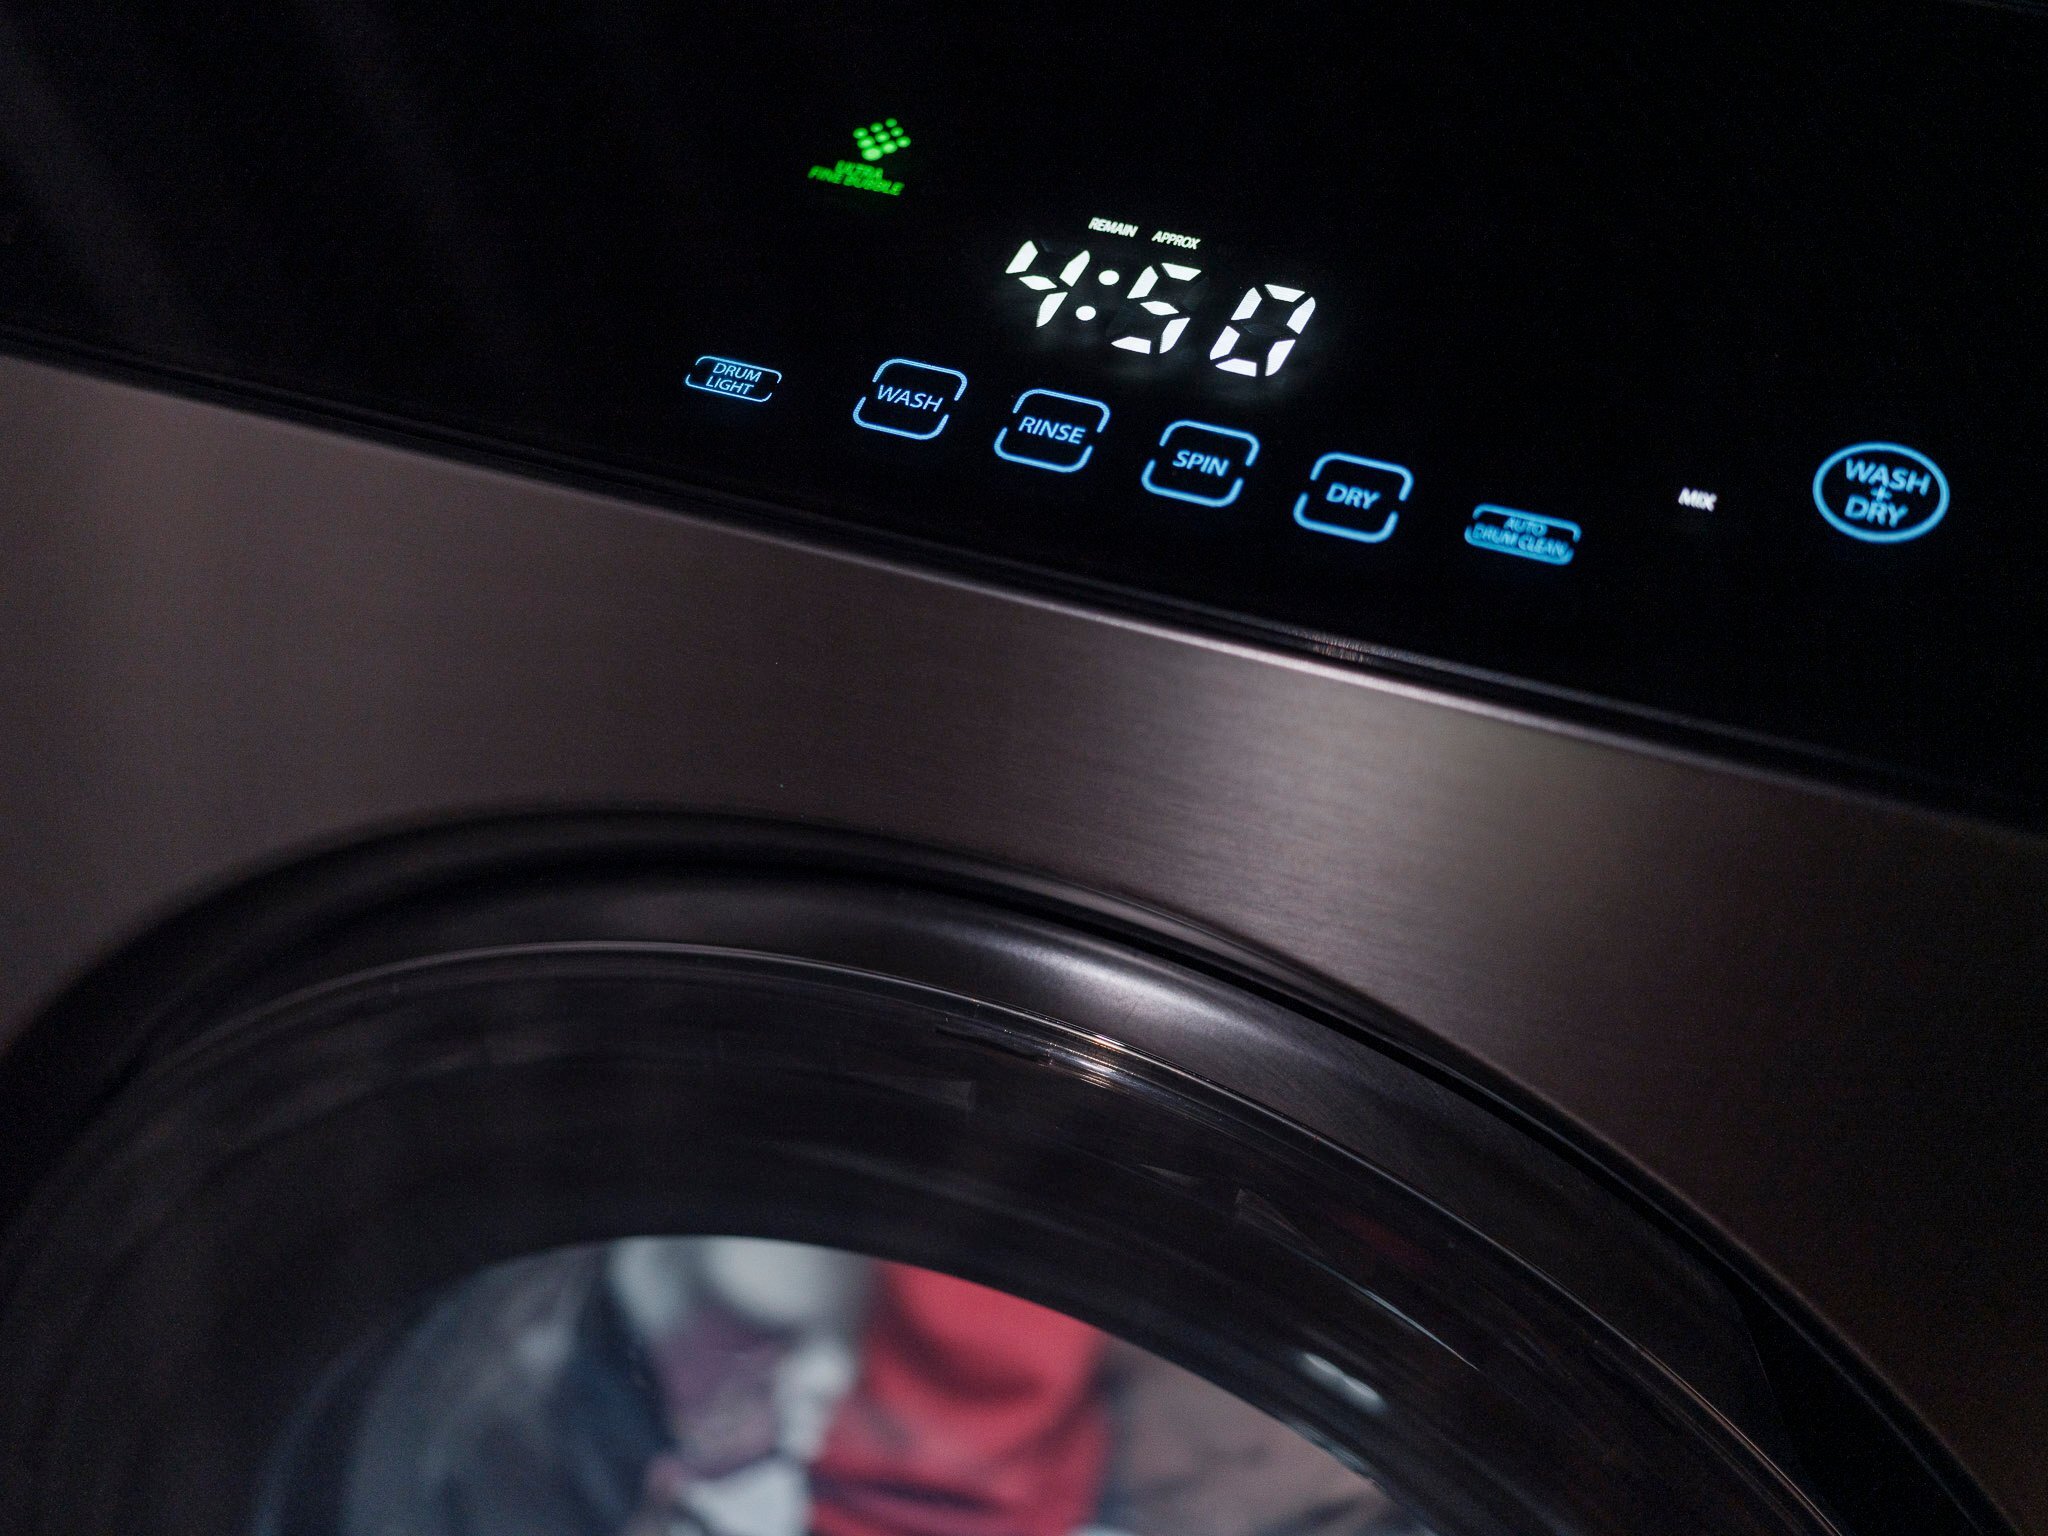 Tìm hiểu những loại máy giặt sấy hiện nay